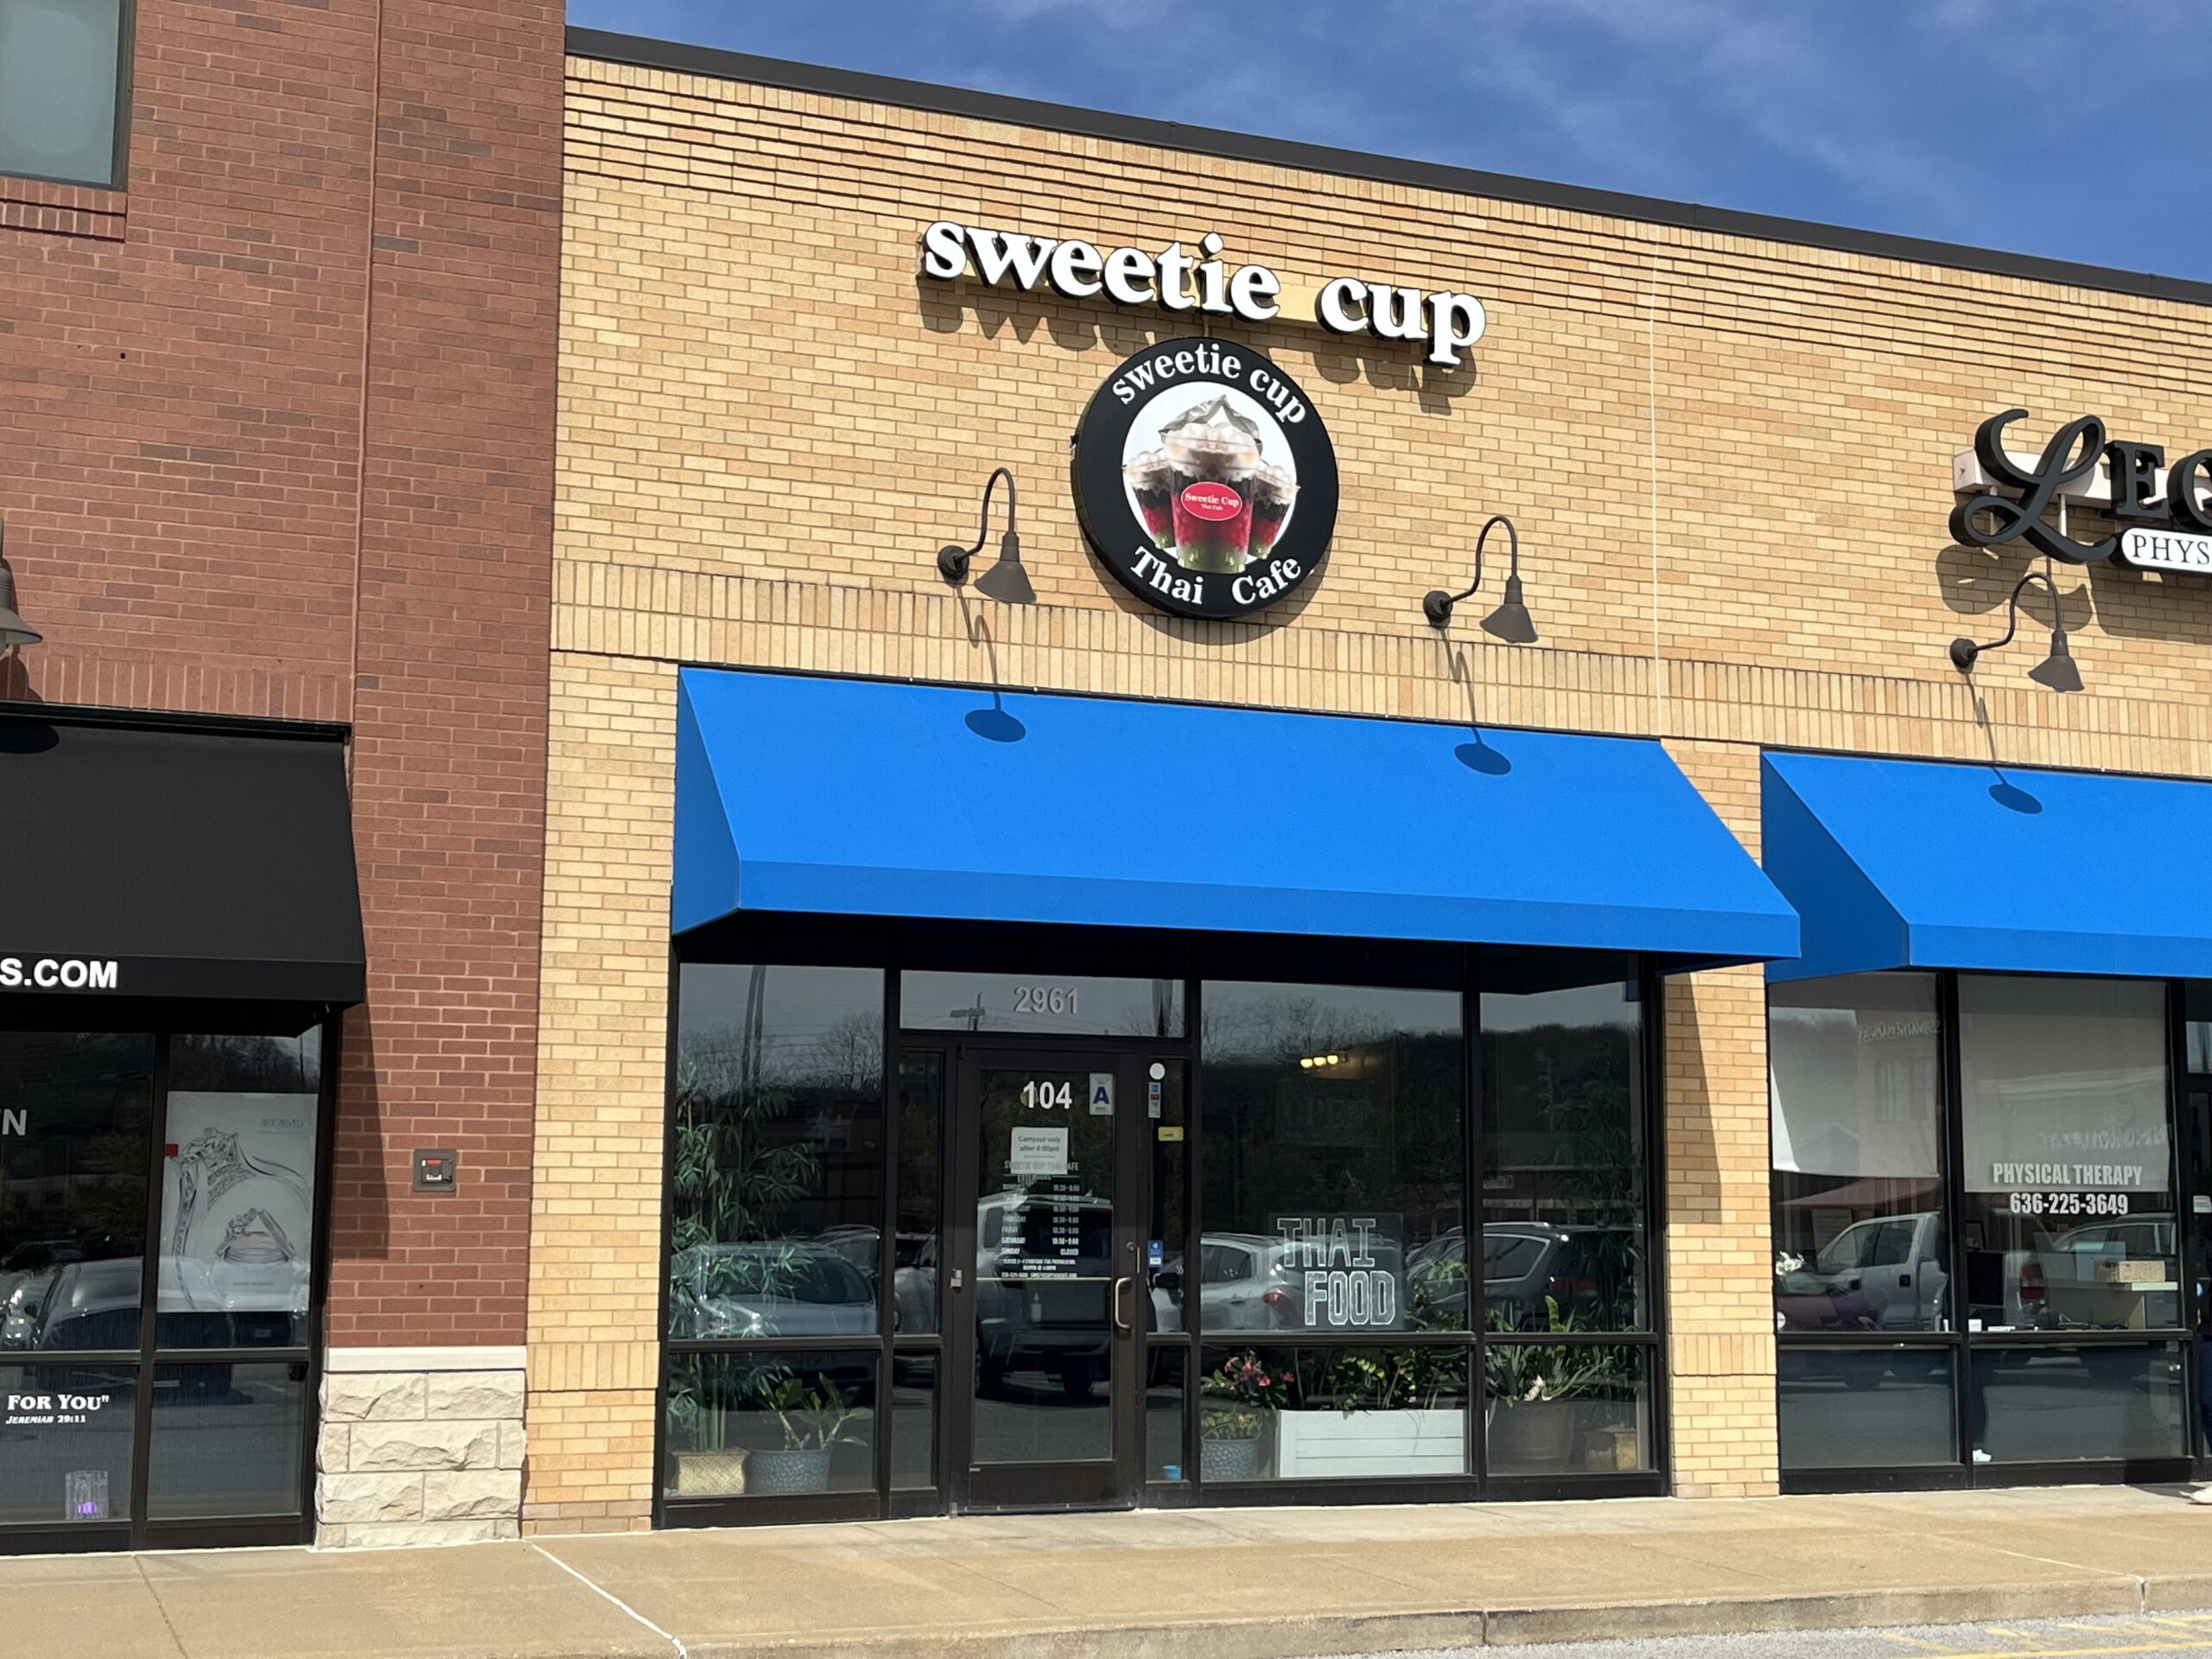 Sweetie Cup Thai Café Announces Changes